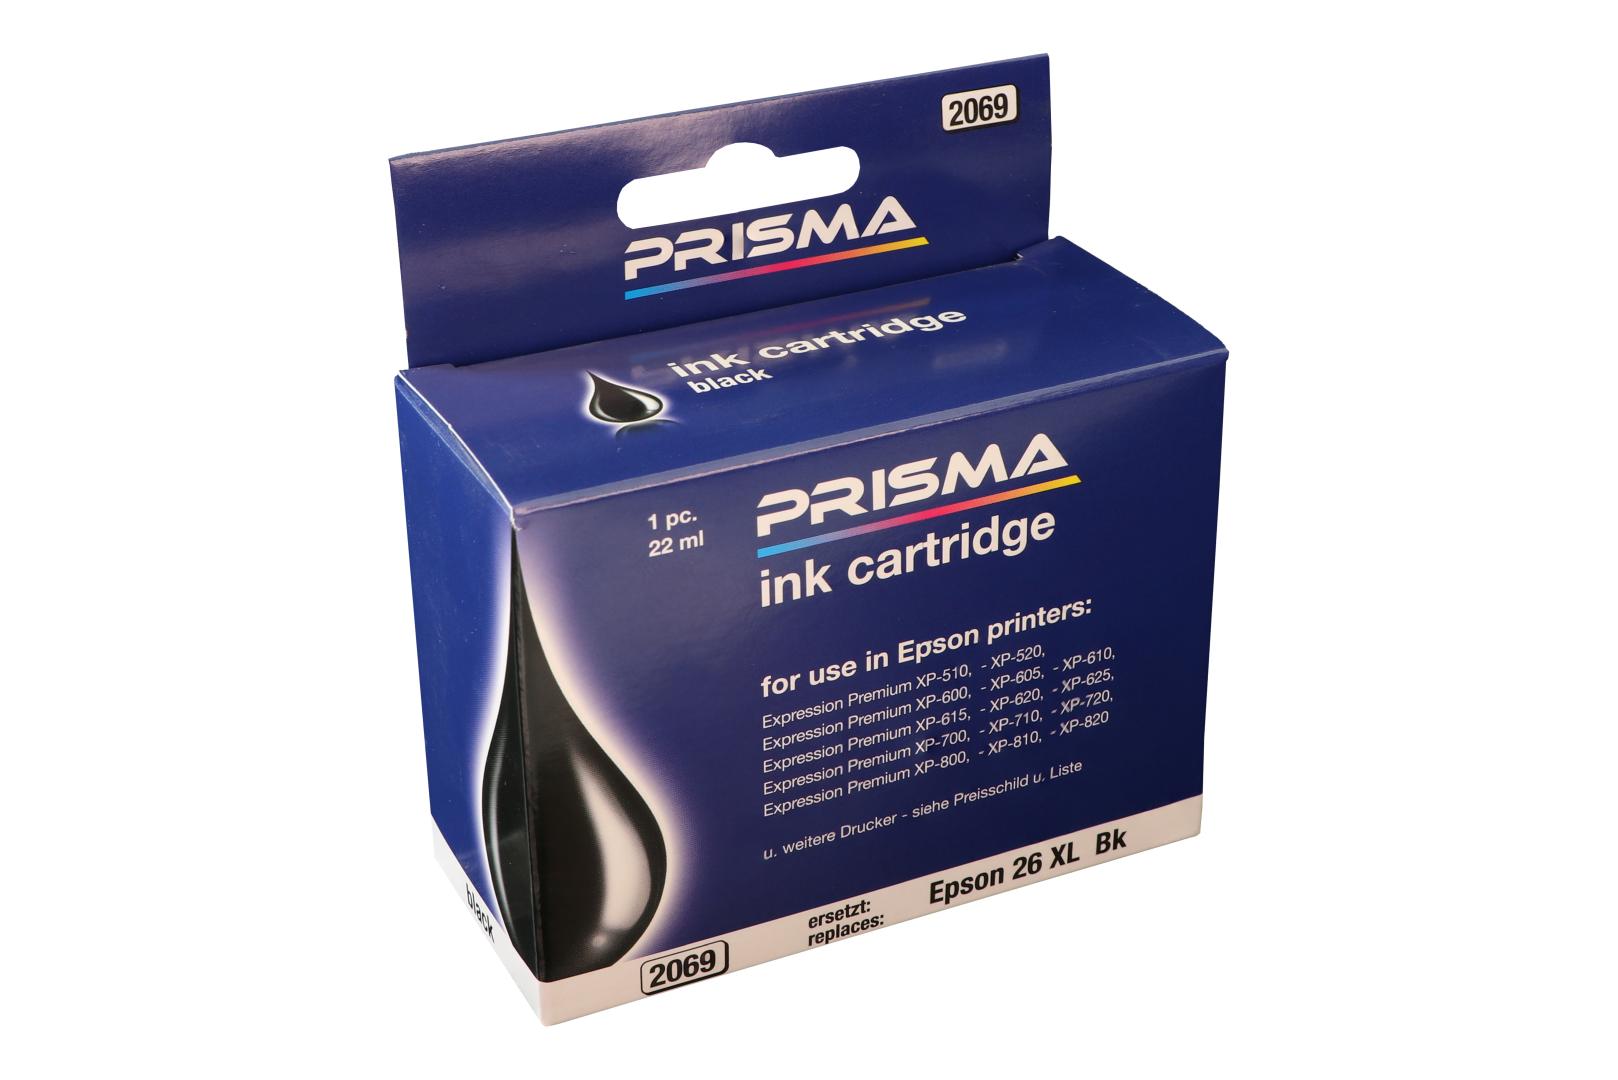 PRISMA 2069 Druckerpatrone für Epson Tintenstrahldrucker, schwarz, 22 ml